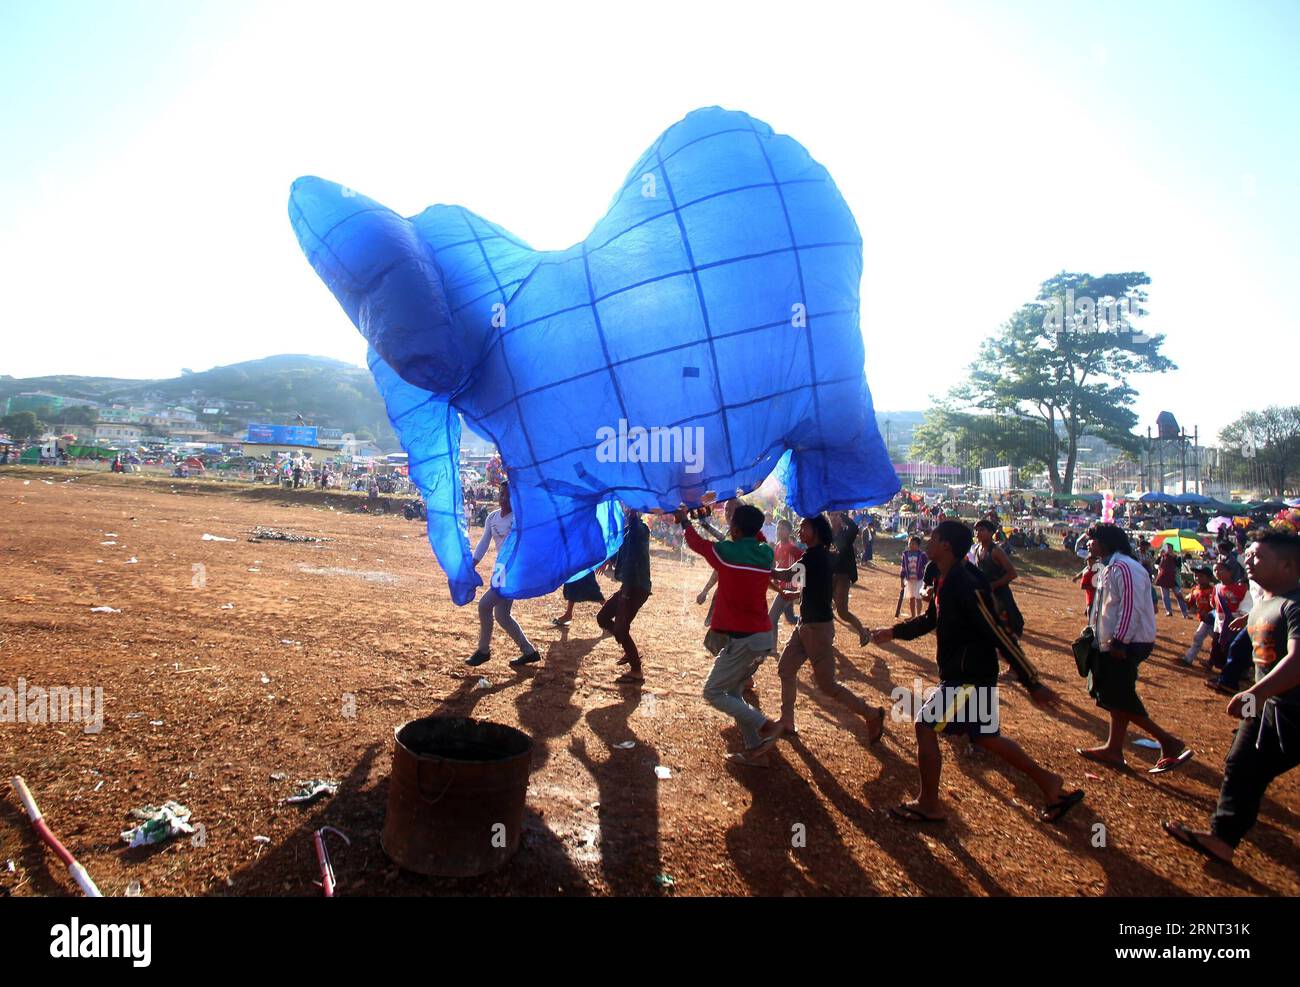 (171028) -- TAUNGGYI (MYANMAR), 28. Oktober 2017 -- die Menschen bereiten sich darauf vor, während des Tazaungdaing-Festivals in Taunggyi, Myanmar, am 27. Oktober 2017 einen elefantenförmigen Ballon freizugeben. Das Tazaungdaing Festival, auch bekannt als das Festival der Lichter, das im achten Monat des traditionellen myanmarischen Kalenders auf den Vollmondtag fällt, wird als Nationalfeiertag in Myanmar gefeiert und markiert das Ende der Regenzeit. U Aung)(zcc) MYANMAR-taunggyi-TAZAUNGDAING FESTIVAL yangon PUBLICATIONxNOTxINxCHN Stockfoto